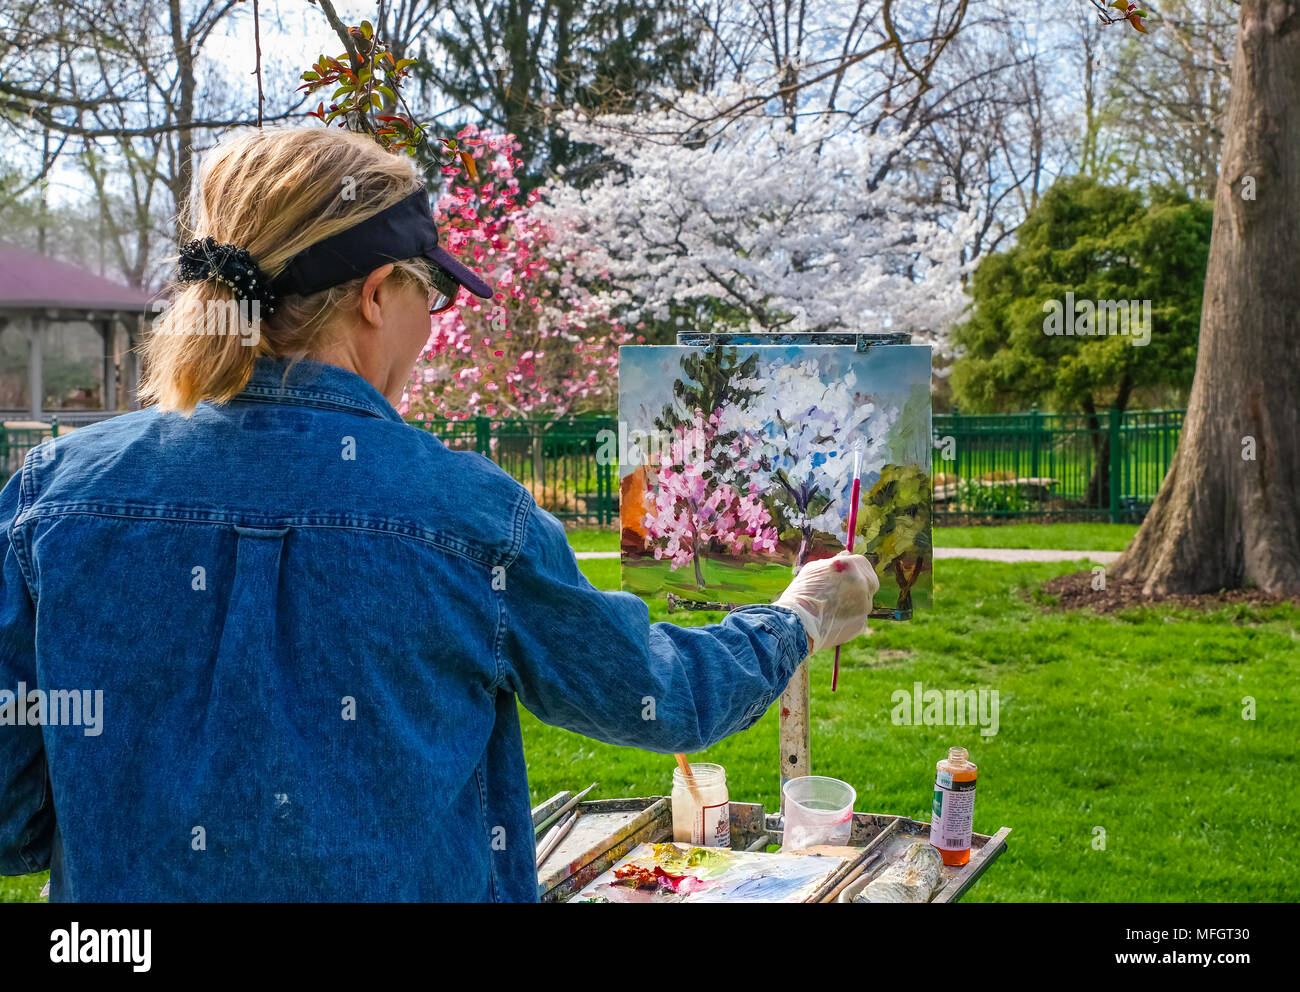 Senior woman painting dans un jardin public au printemps dans le Missouri ; la peinture et les sujets sont clairement visibles Banque D'Images